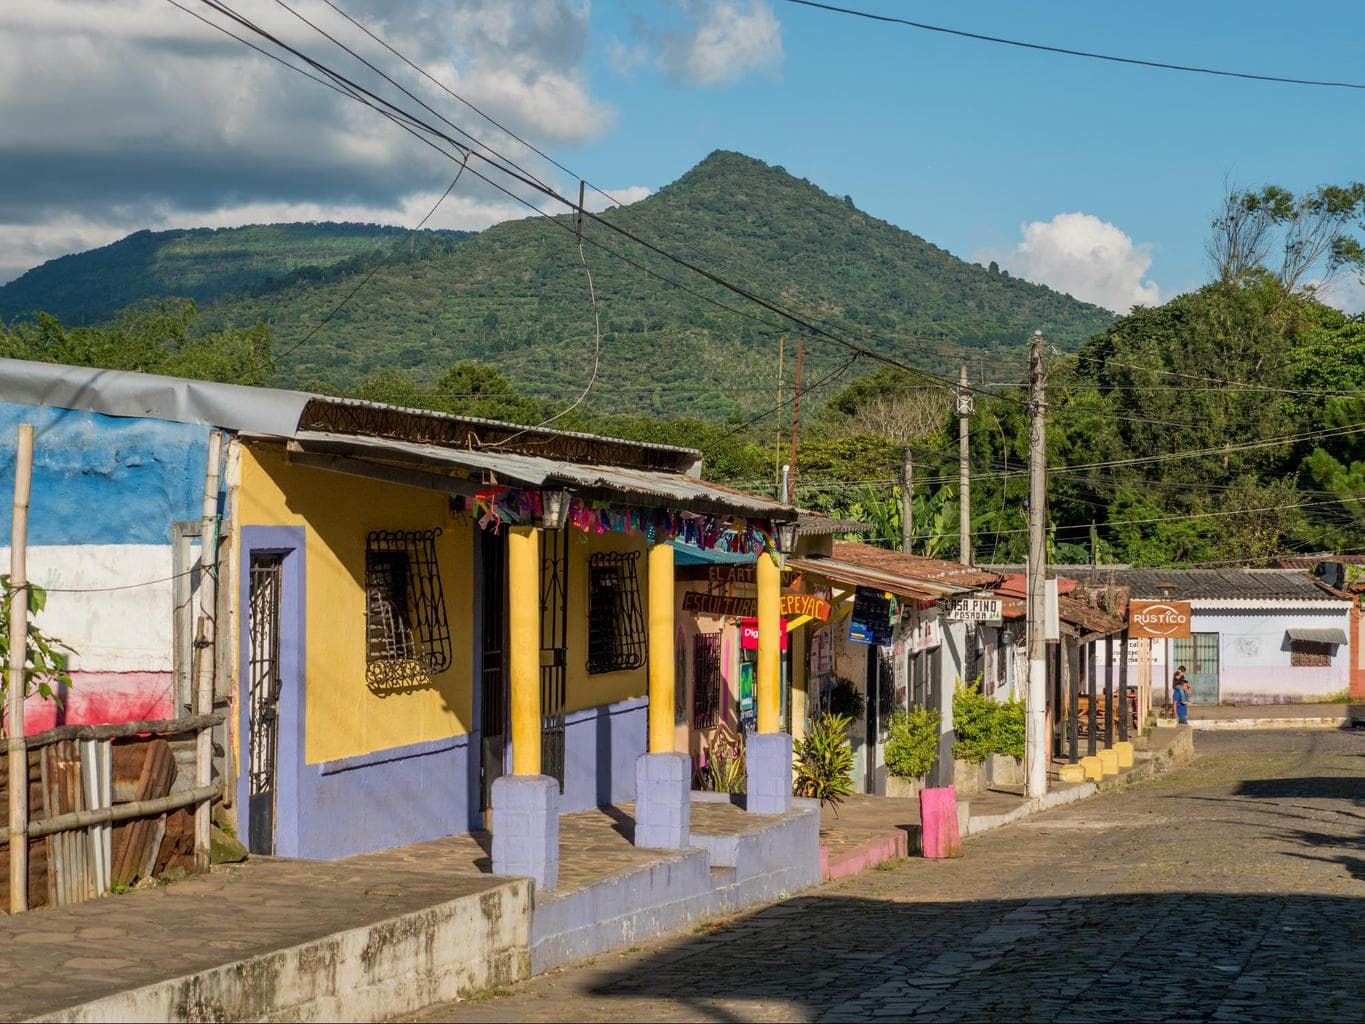 Road in El Salvador